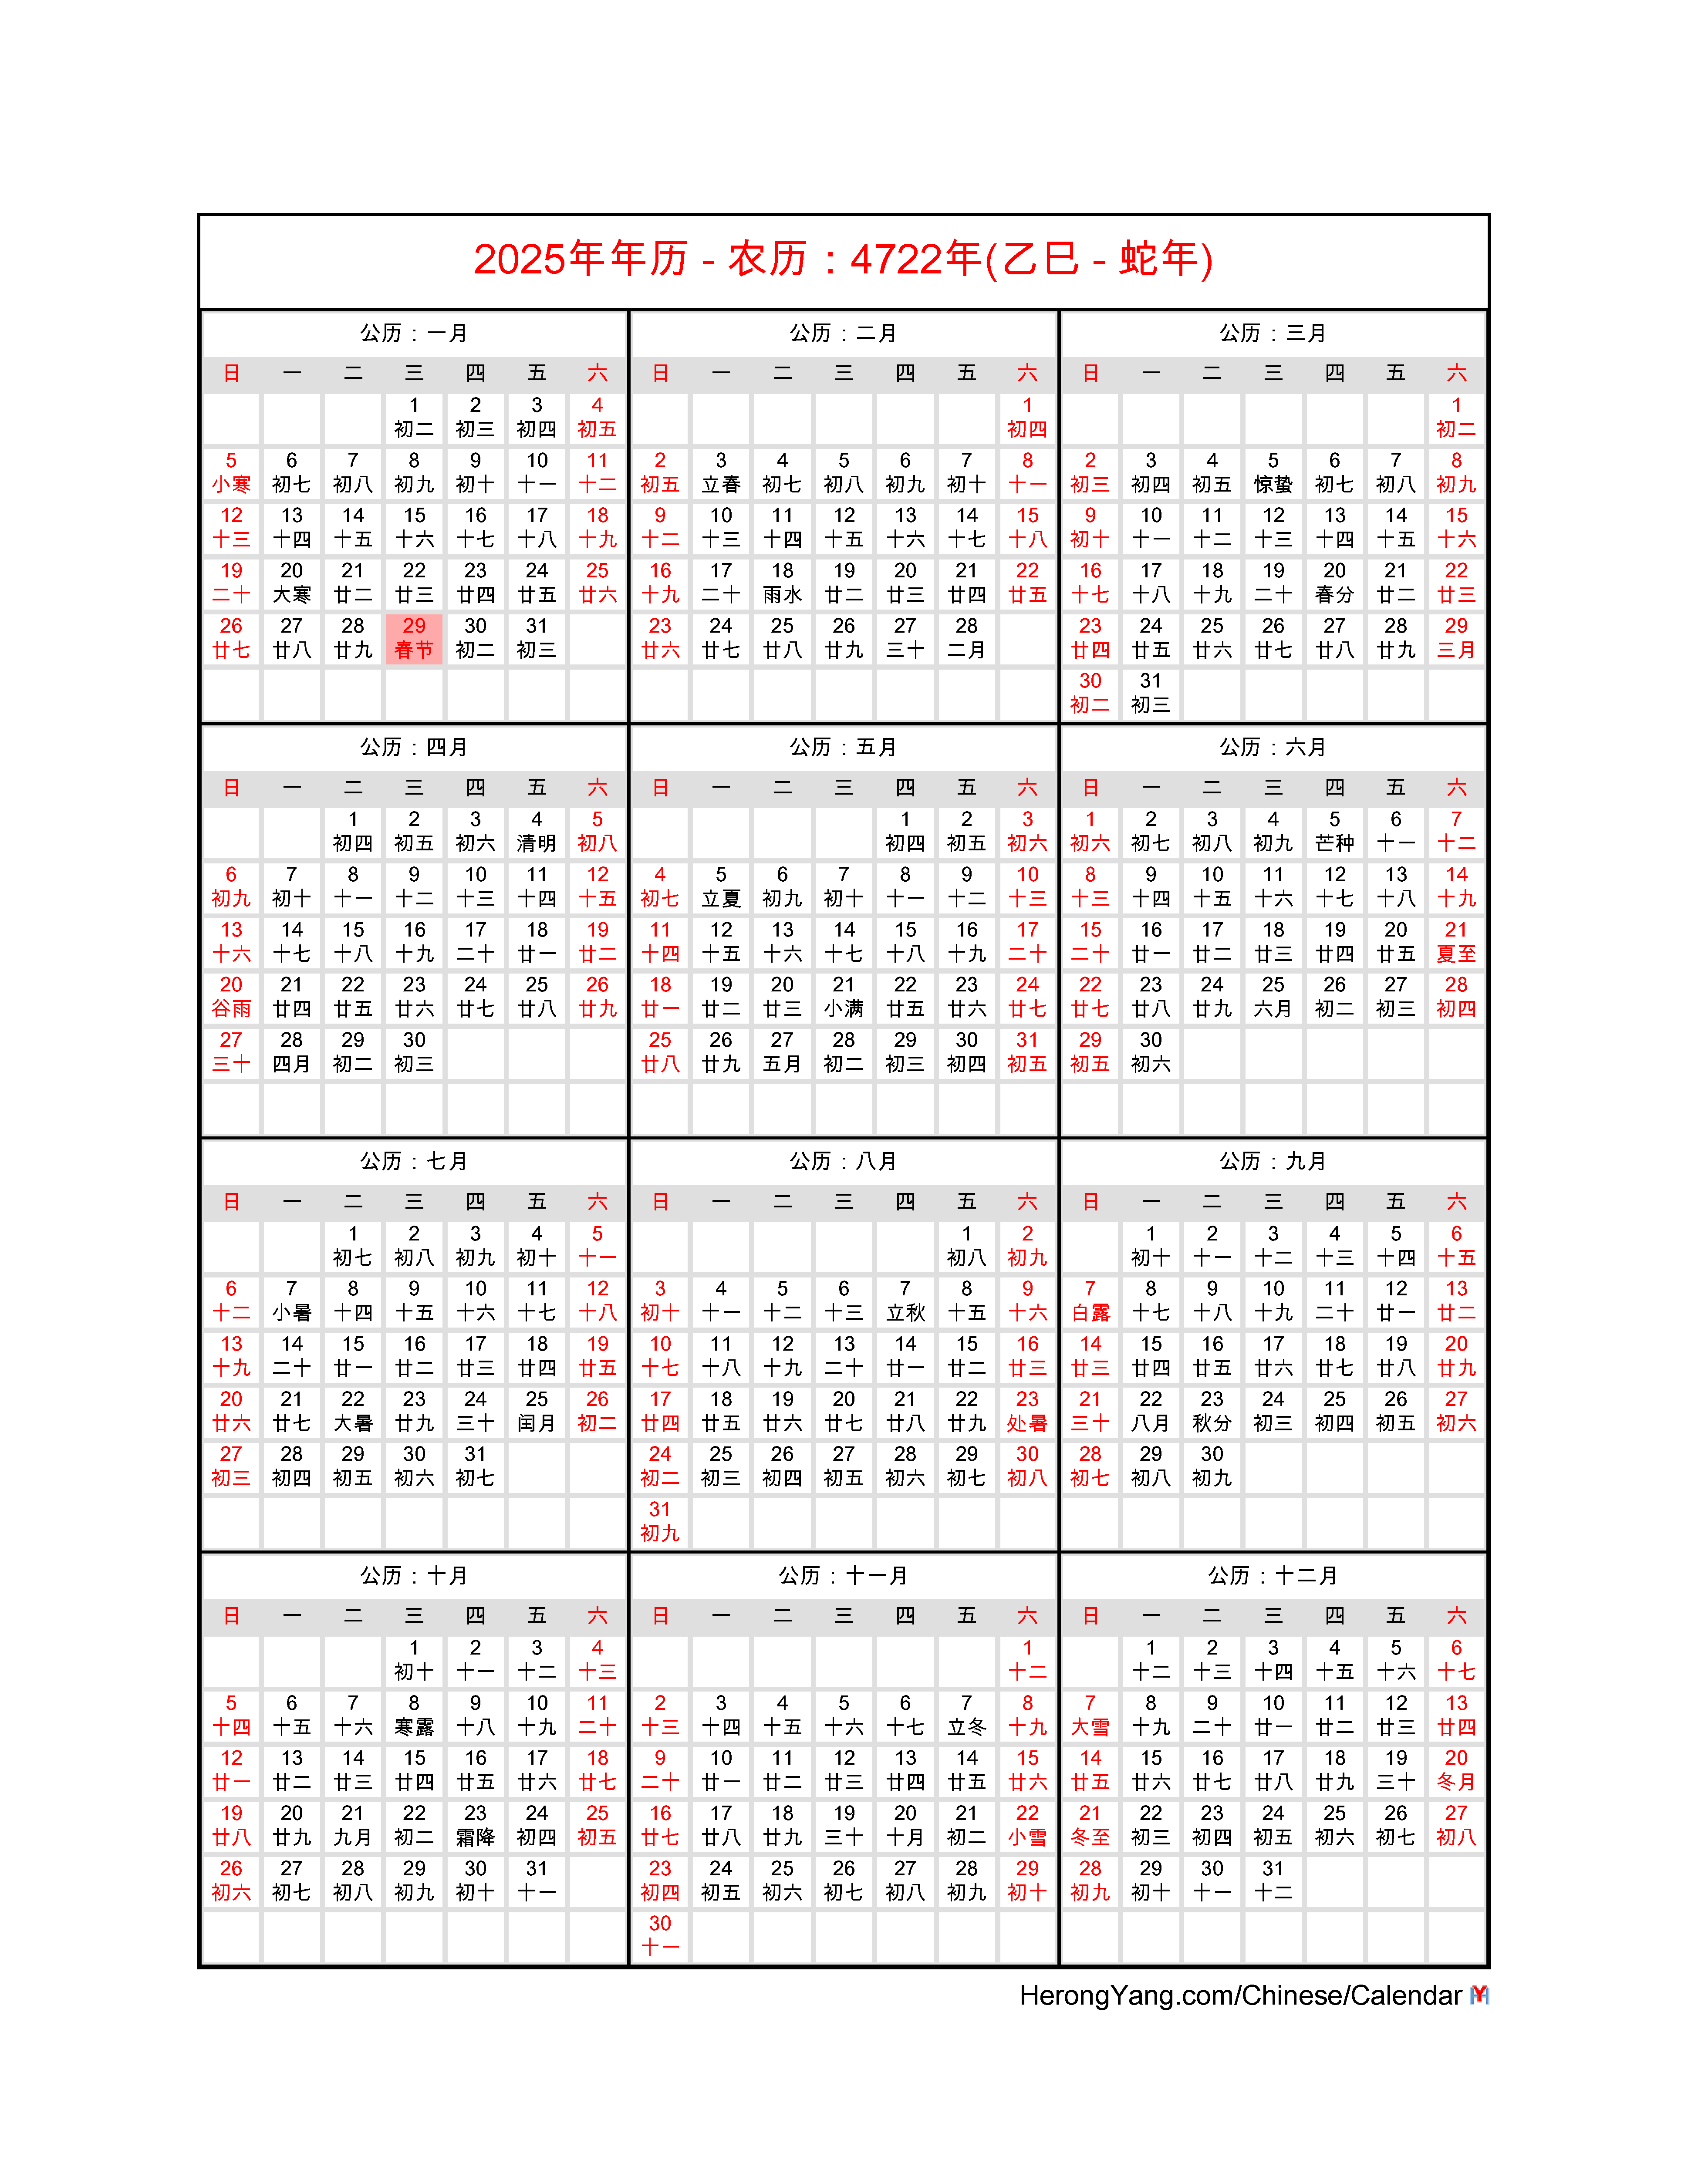 Hong Kong Calendar 2025 With Lunar Calendar - Cahra Corella